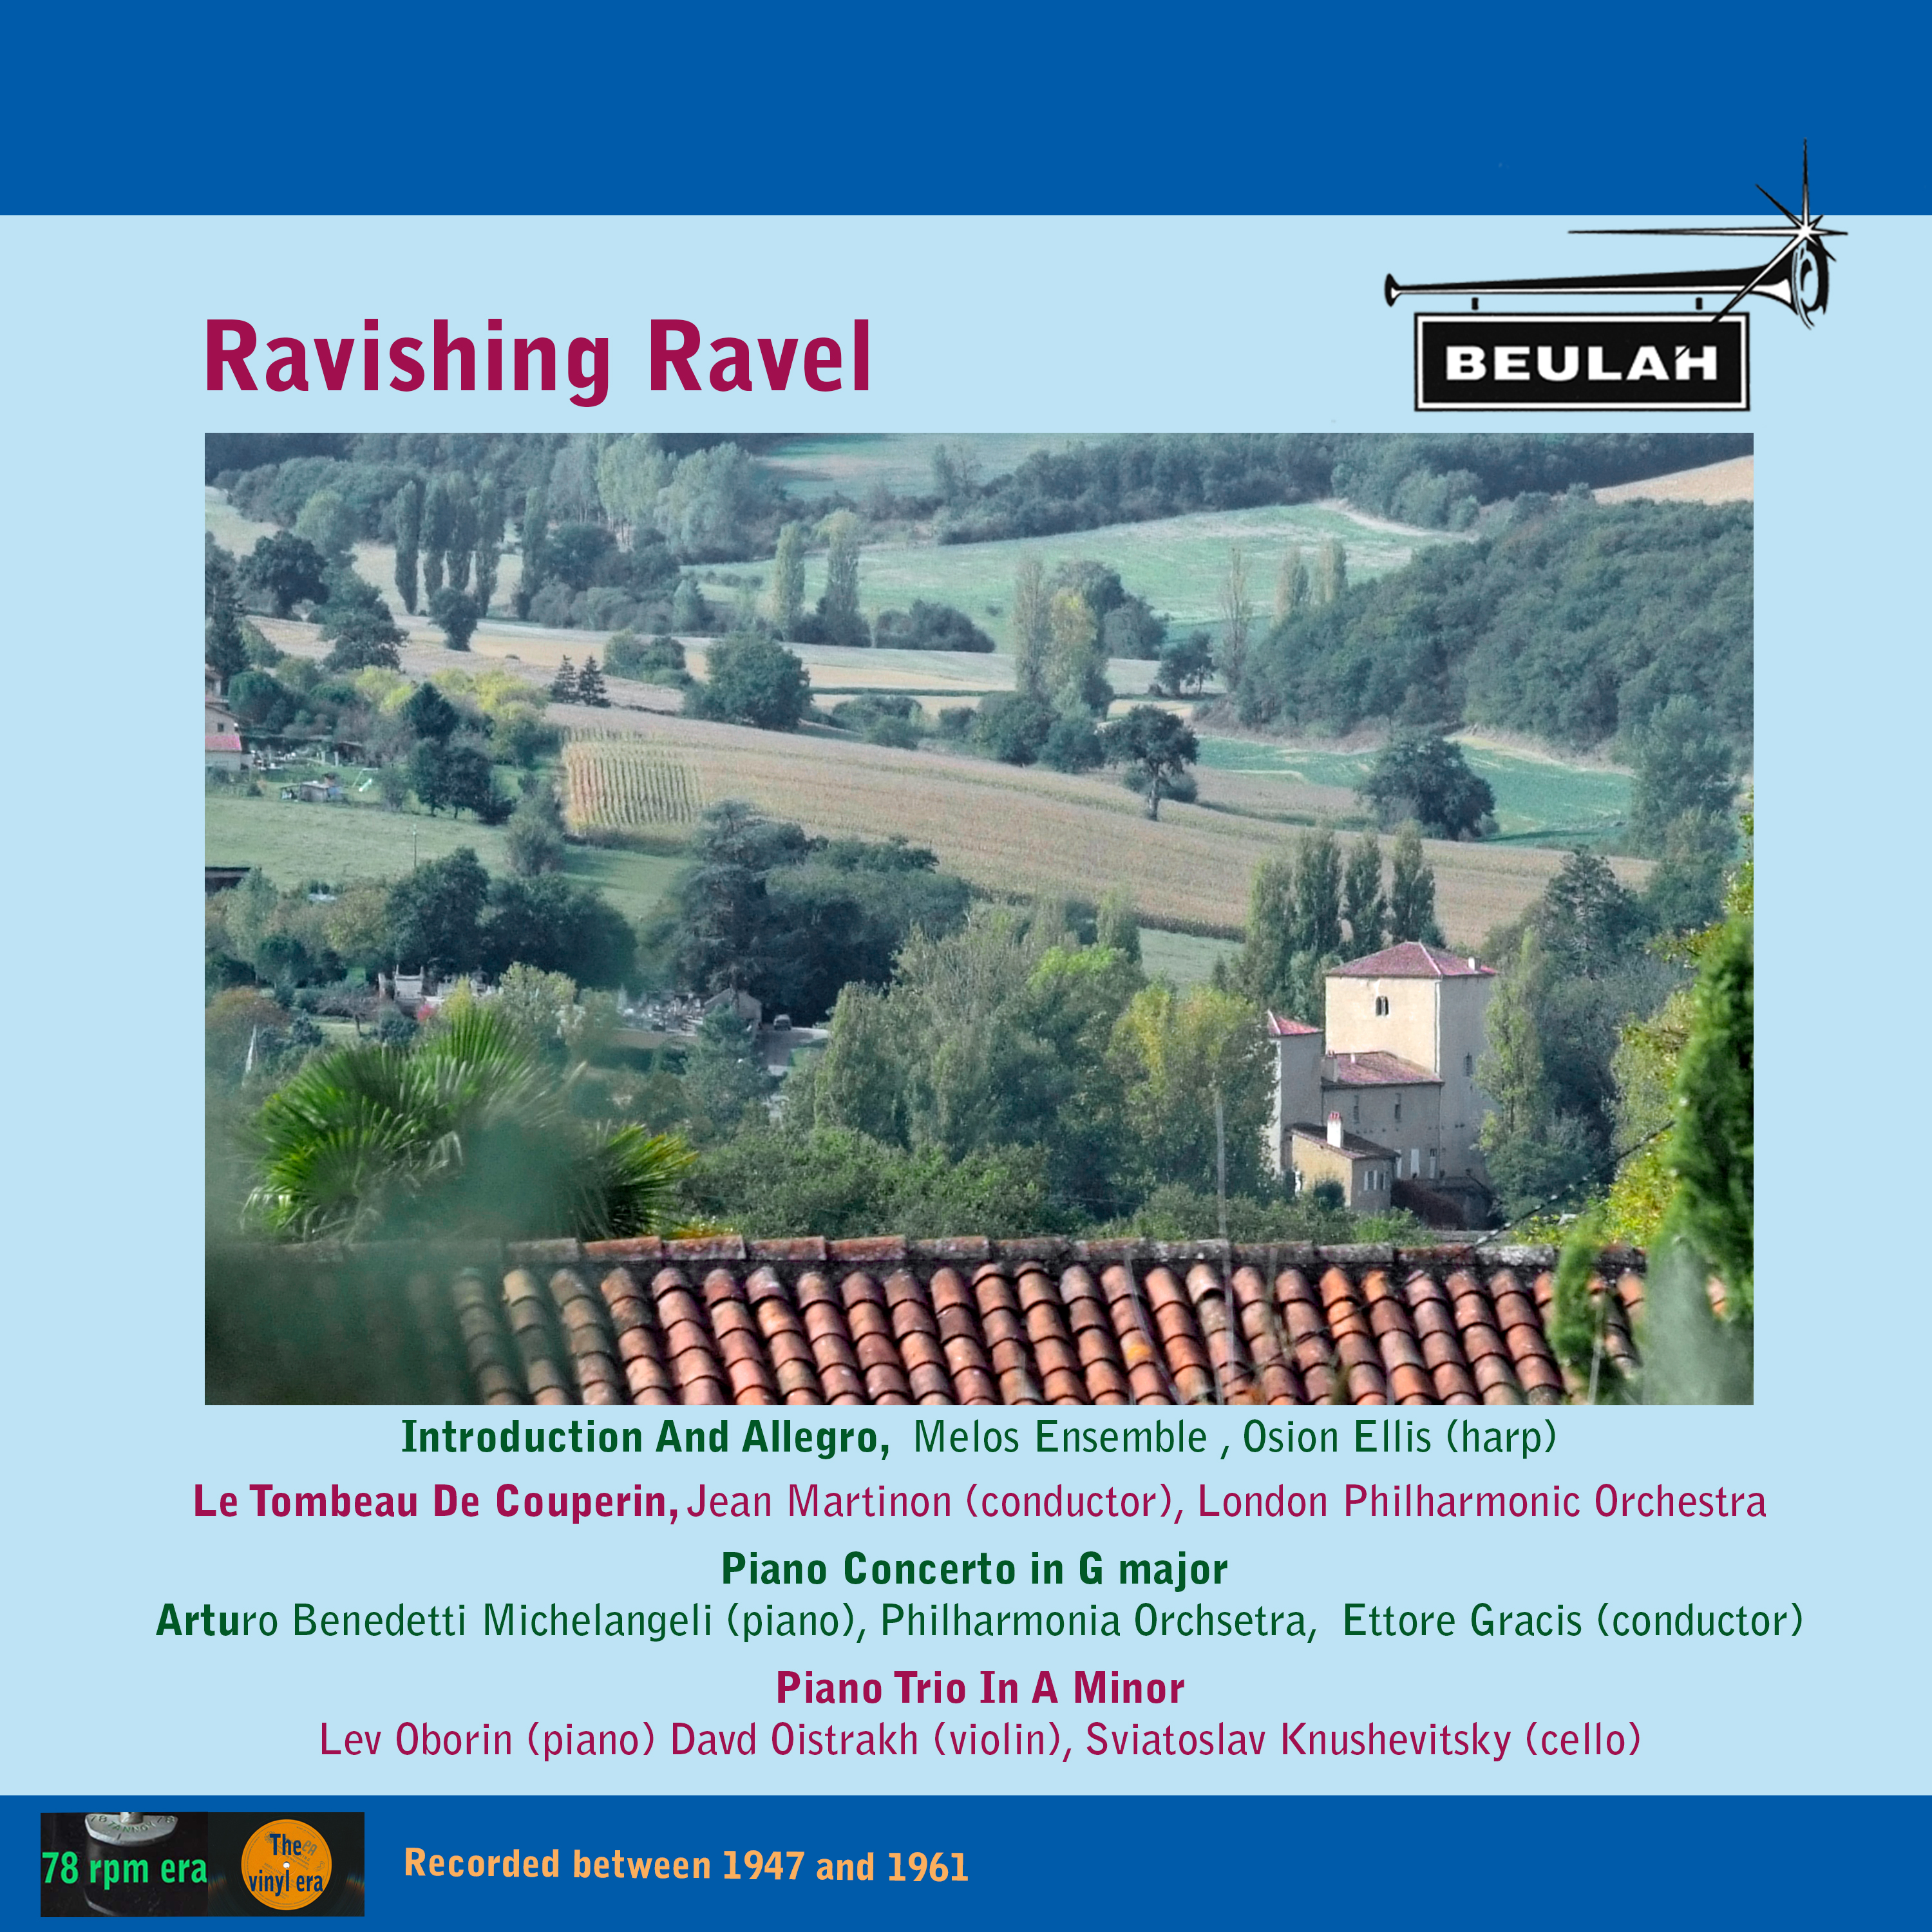 Ravishing Ravel